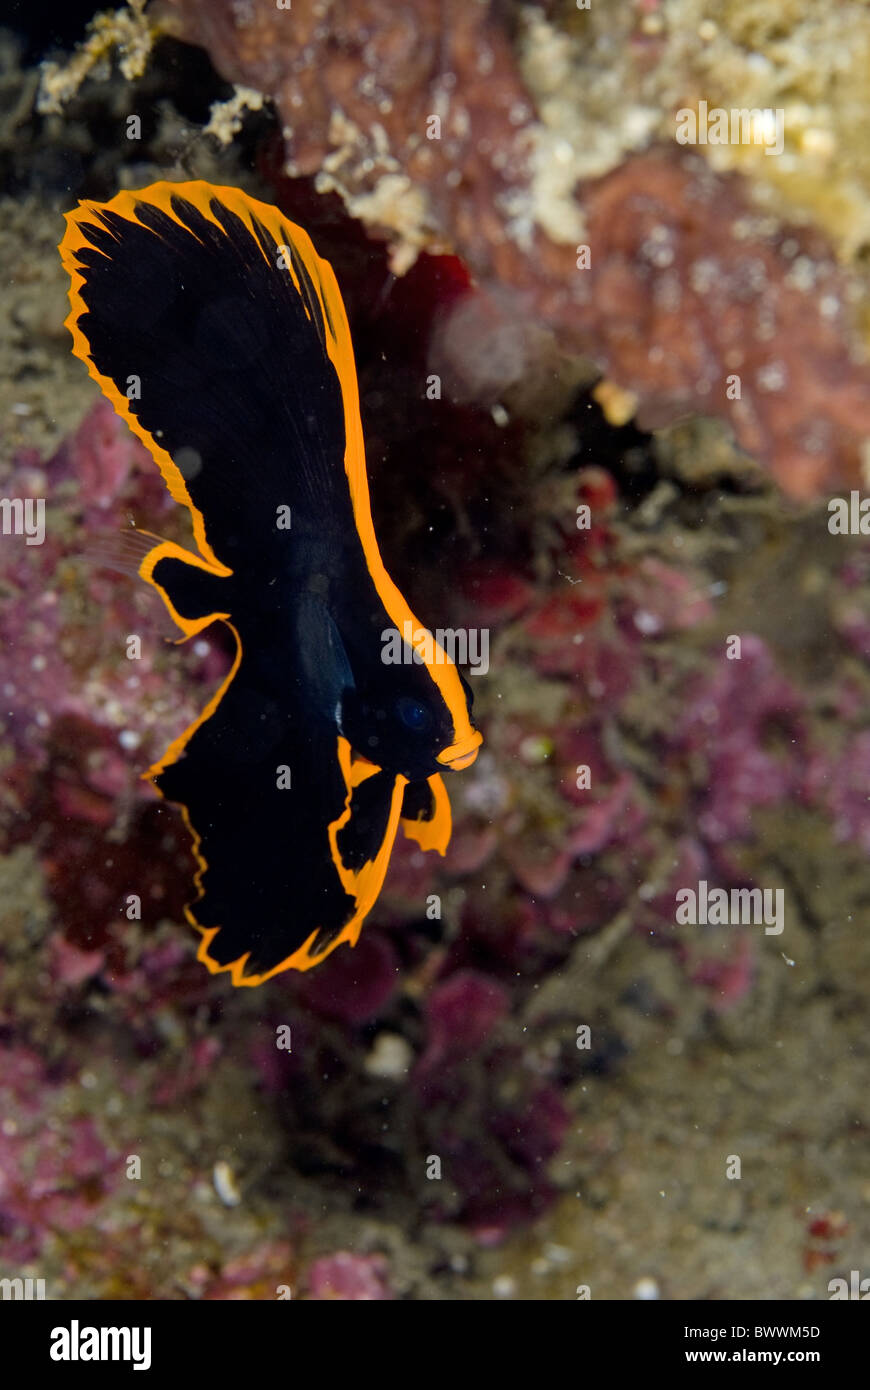 Pesce Pipistrello Pennato Immagini e Fotos Stock - Alamy